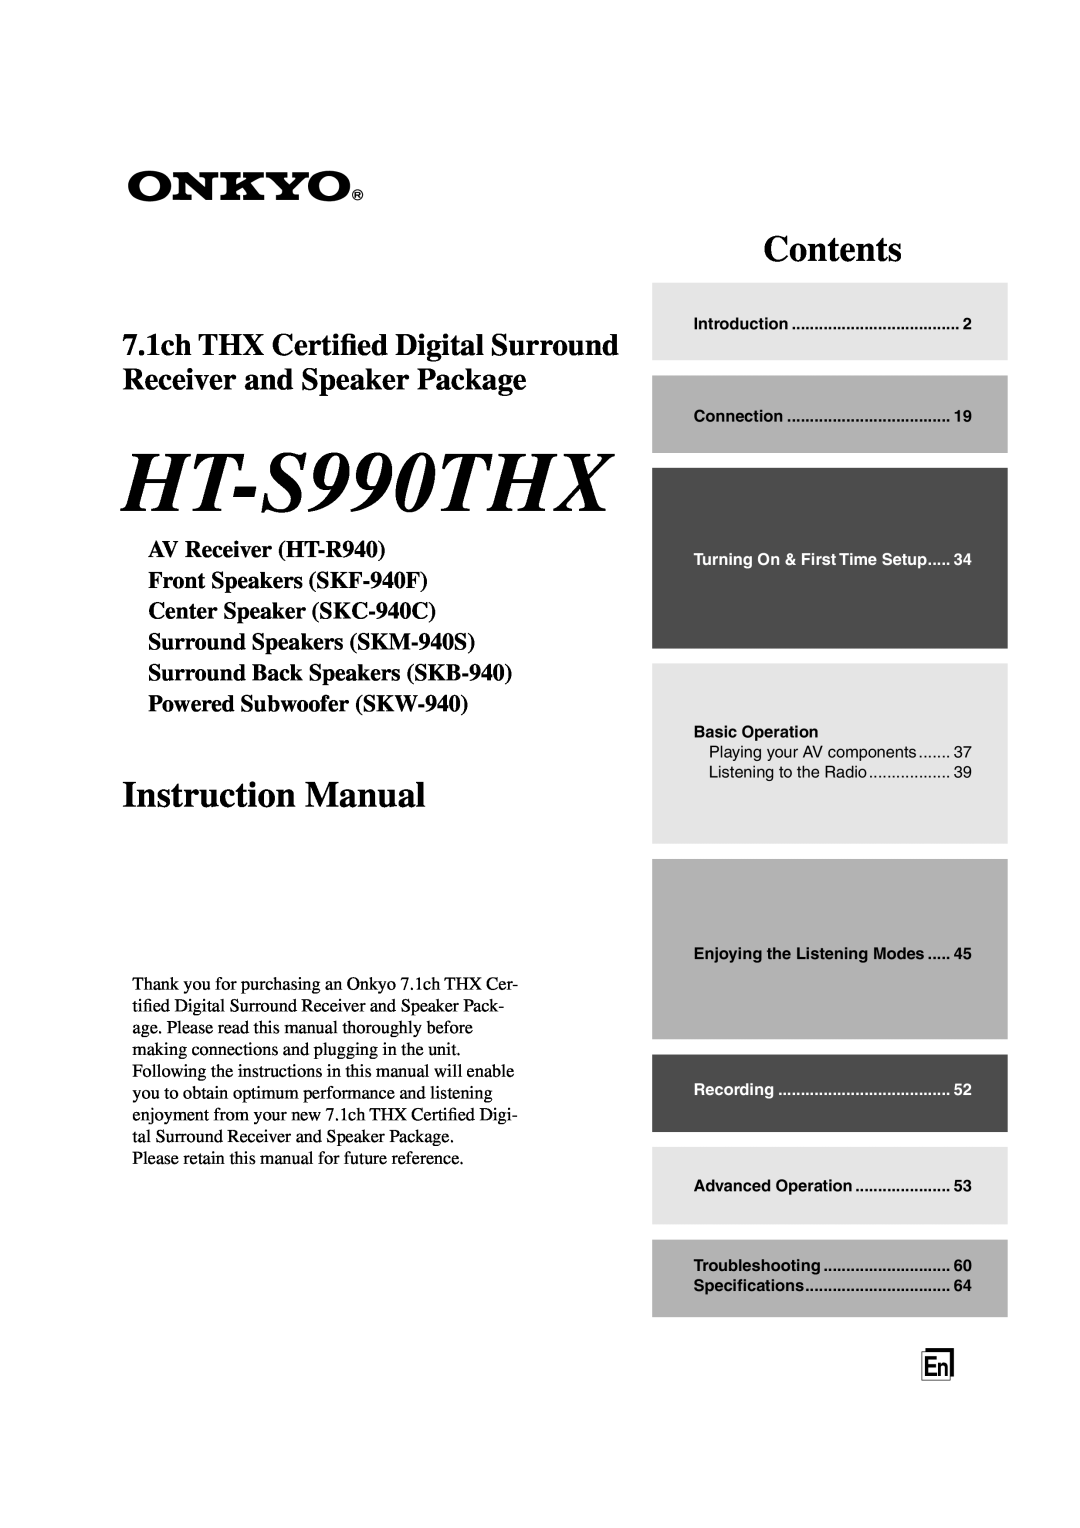 Onkyo HT-S990THX instruction manual Contents, AV Receiver HT-R940 Front Speakers SKF-940F, Center Speaker SKC-940C 